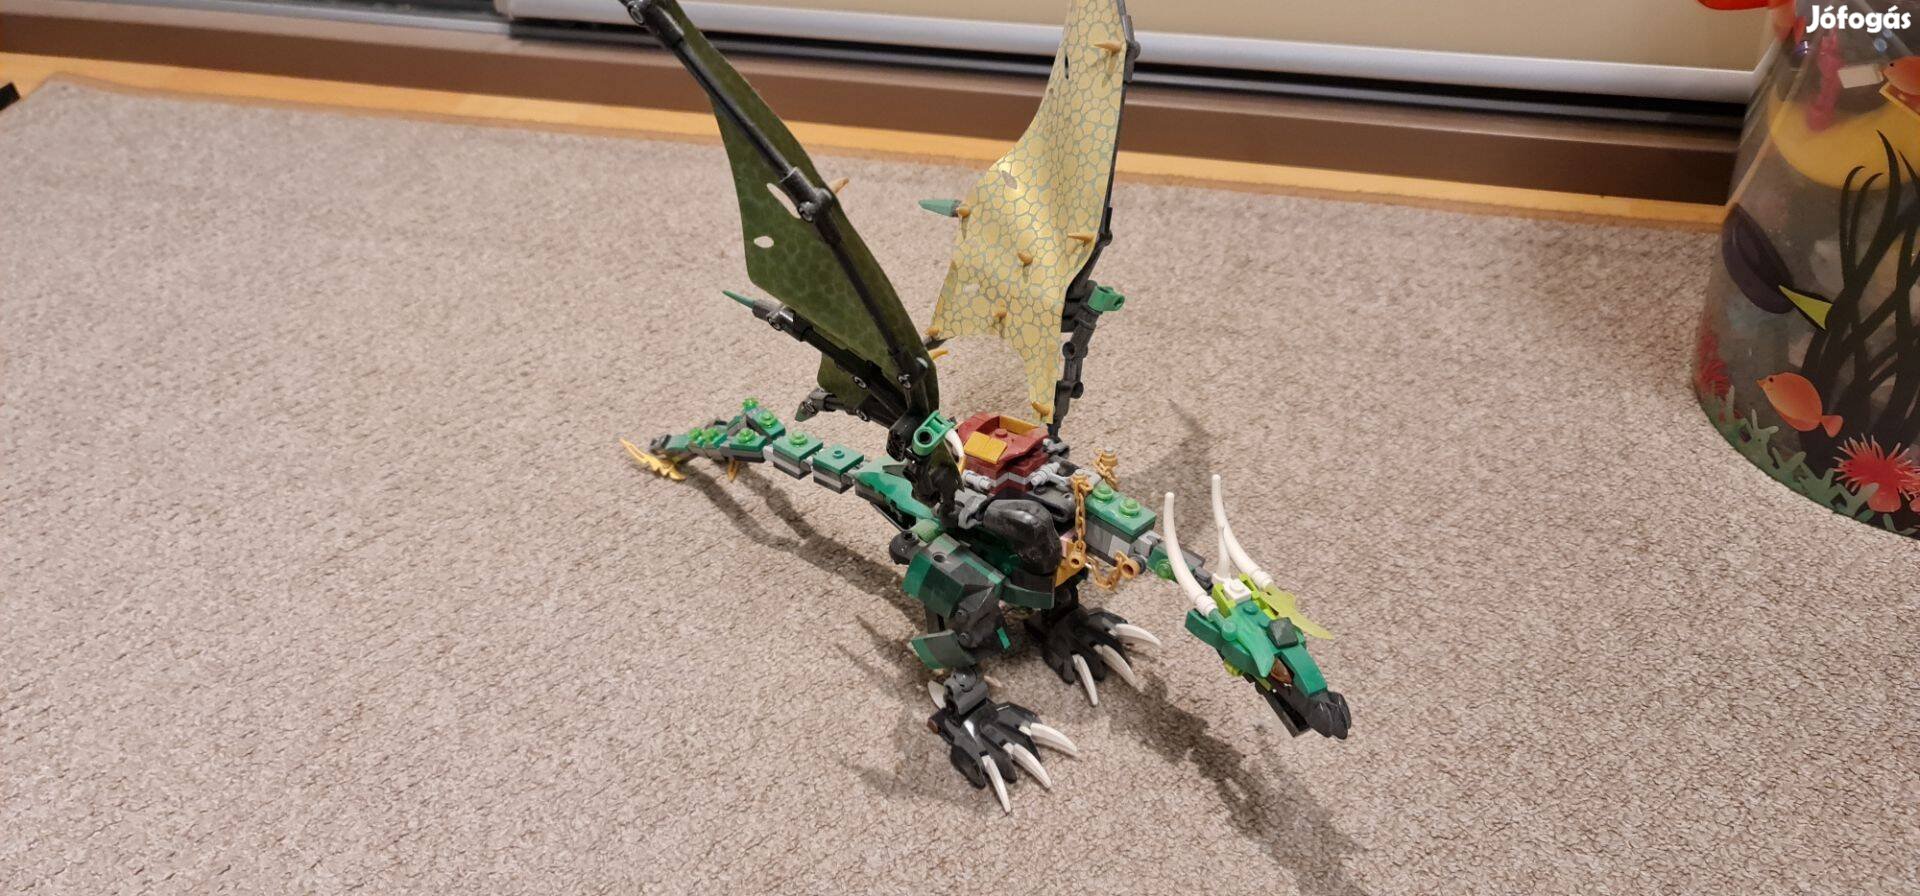 Lego sárkány eladó, kb 37cm hosszú, 30 cm magas